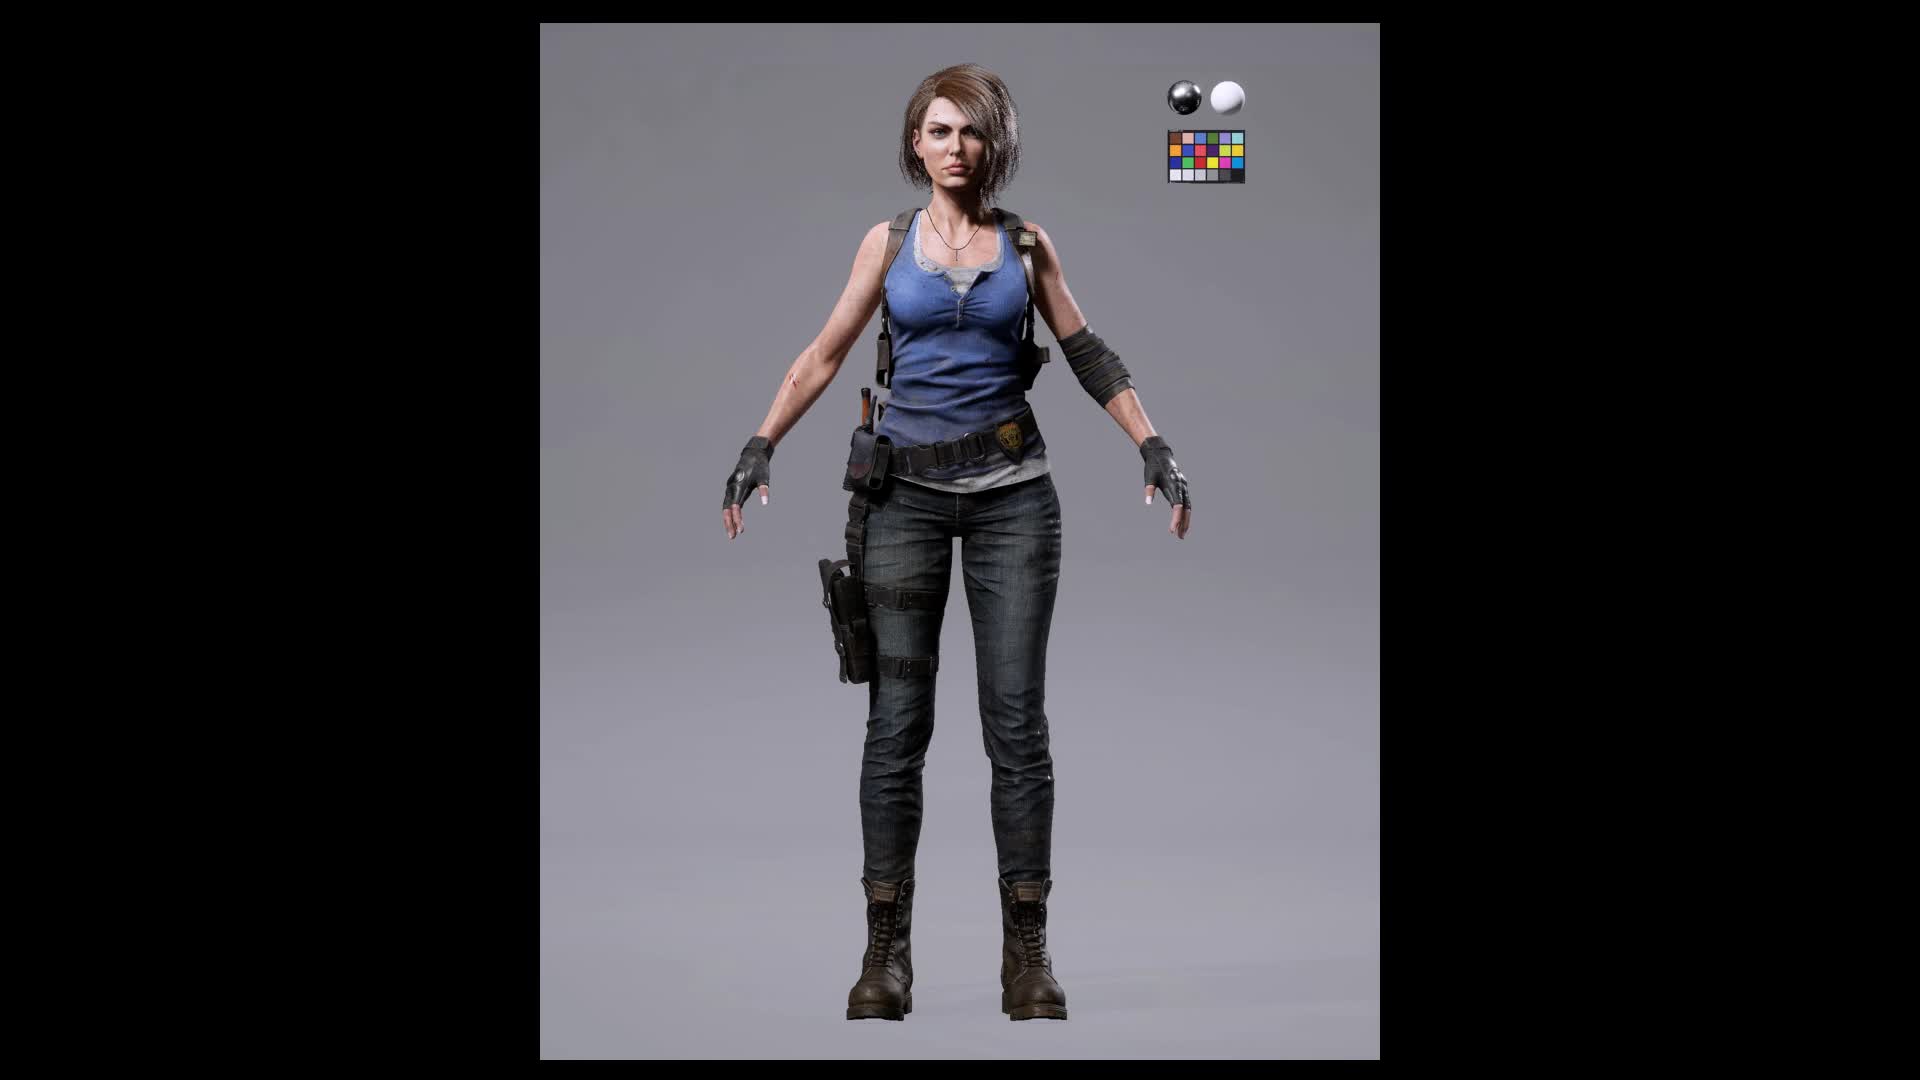 ArtStation - Jill Valentine Portrait Cover (Resident Evil 3 Remake)